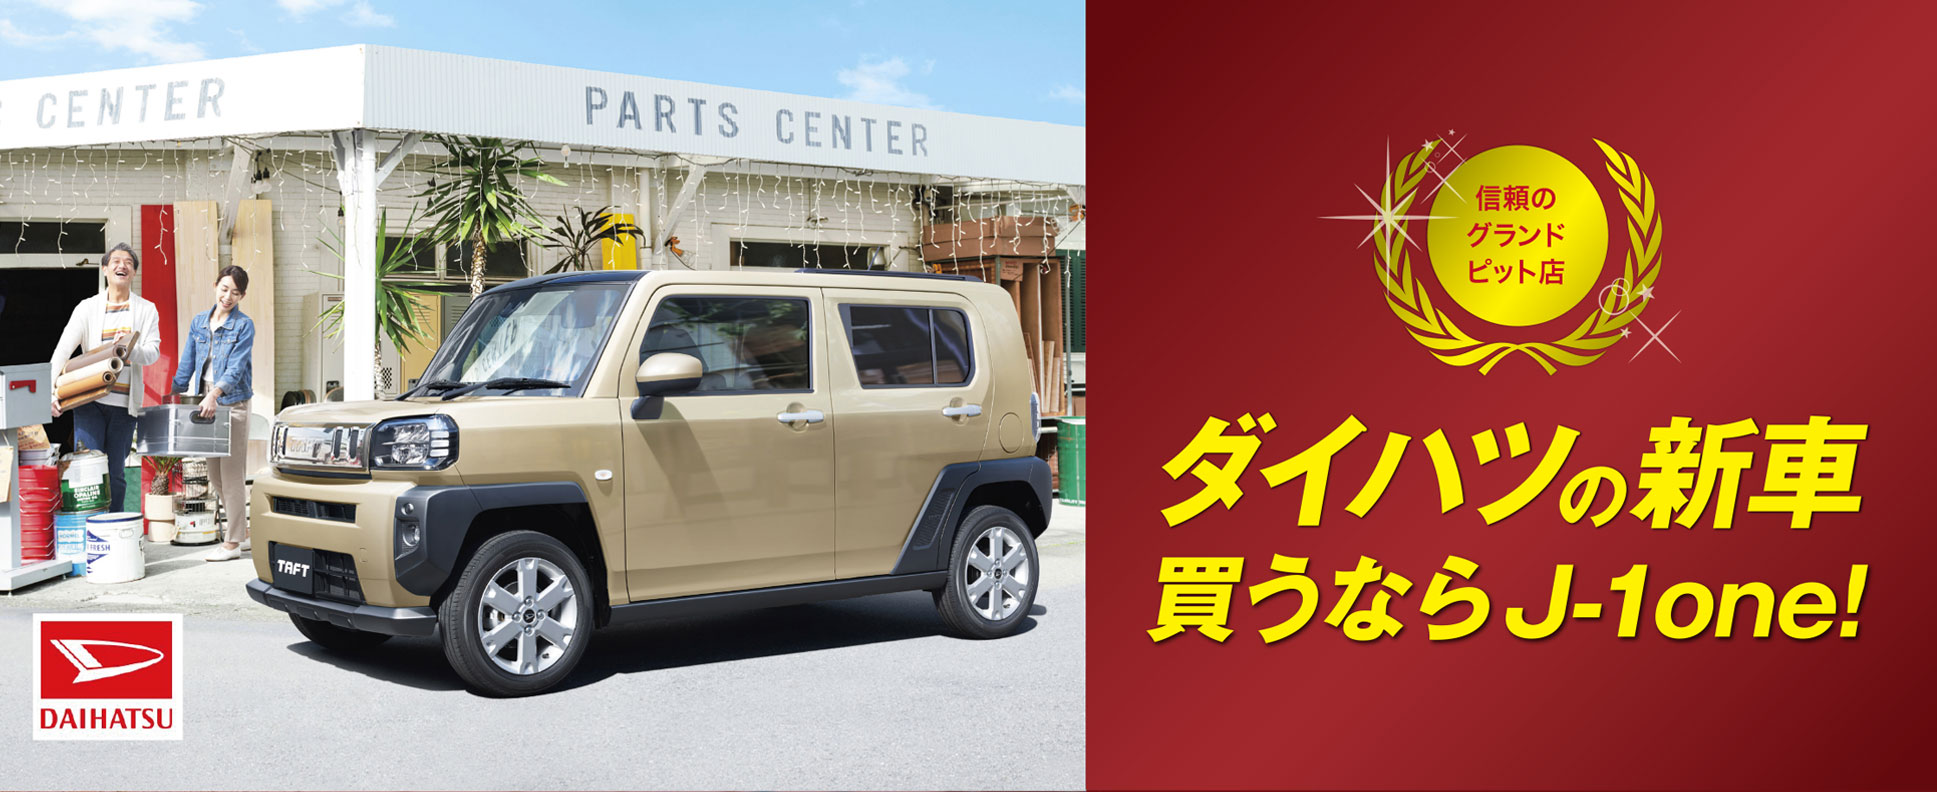 ダイハツの新車買うなら函館の新車販売、中古車販売　株式会社サトウ自動車函館　J-1one